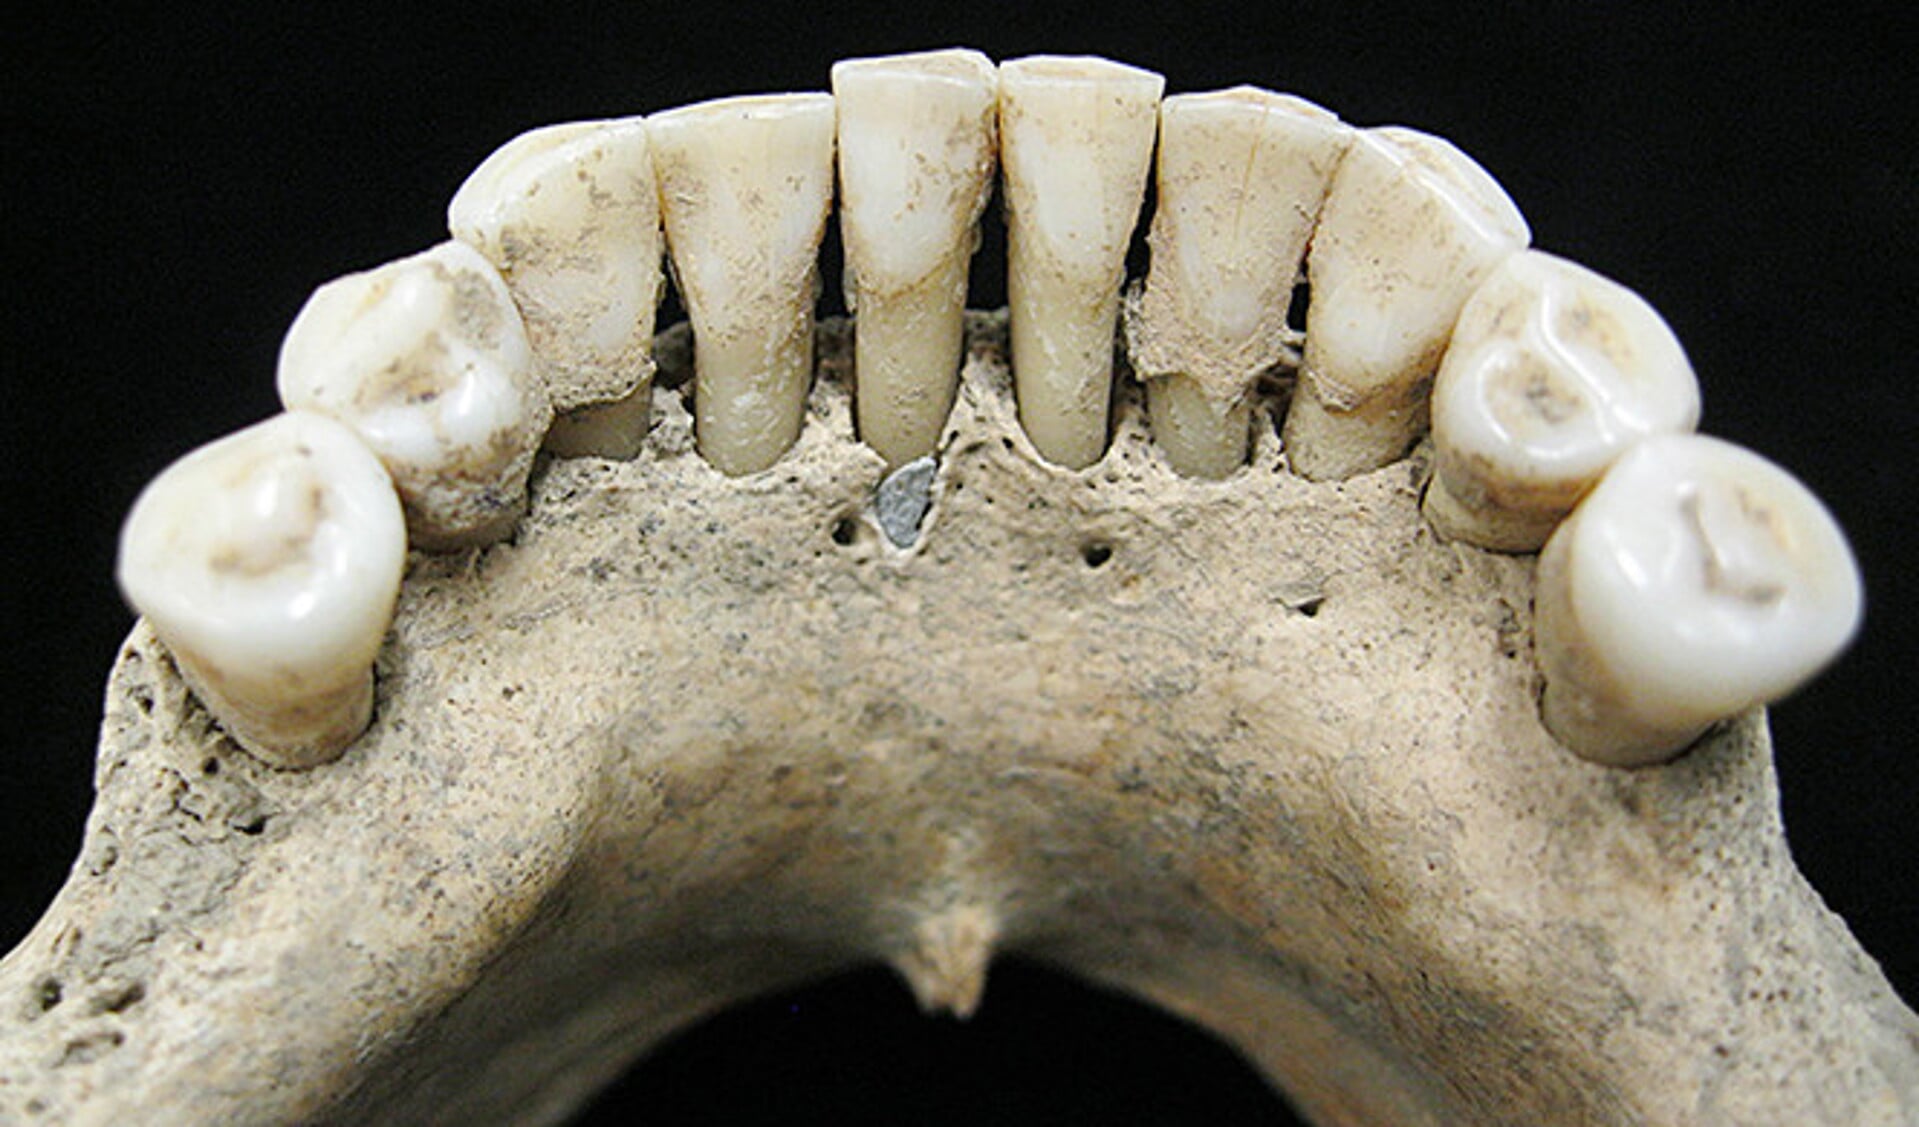 Circa honderd korrels van ultramarijn pigment bevatte de tandplak van een vrouw uit de elfde eeuw.